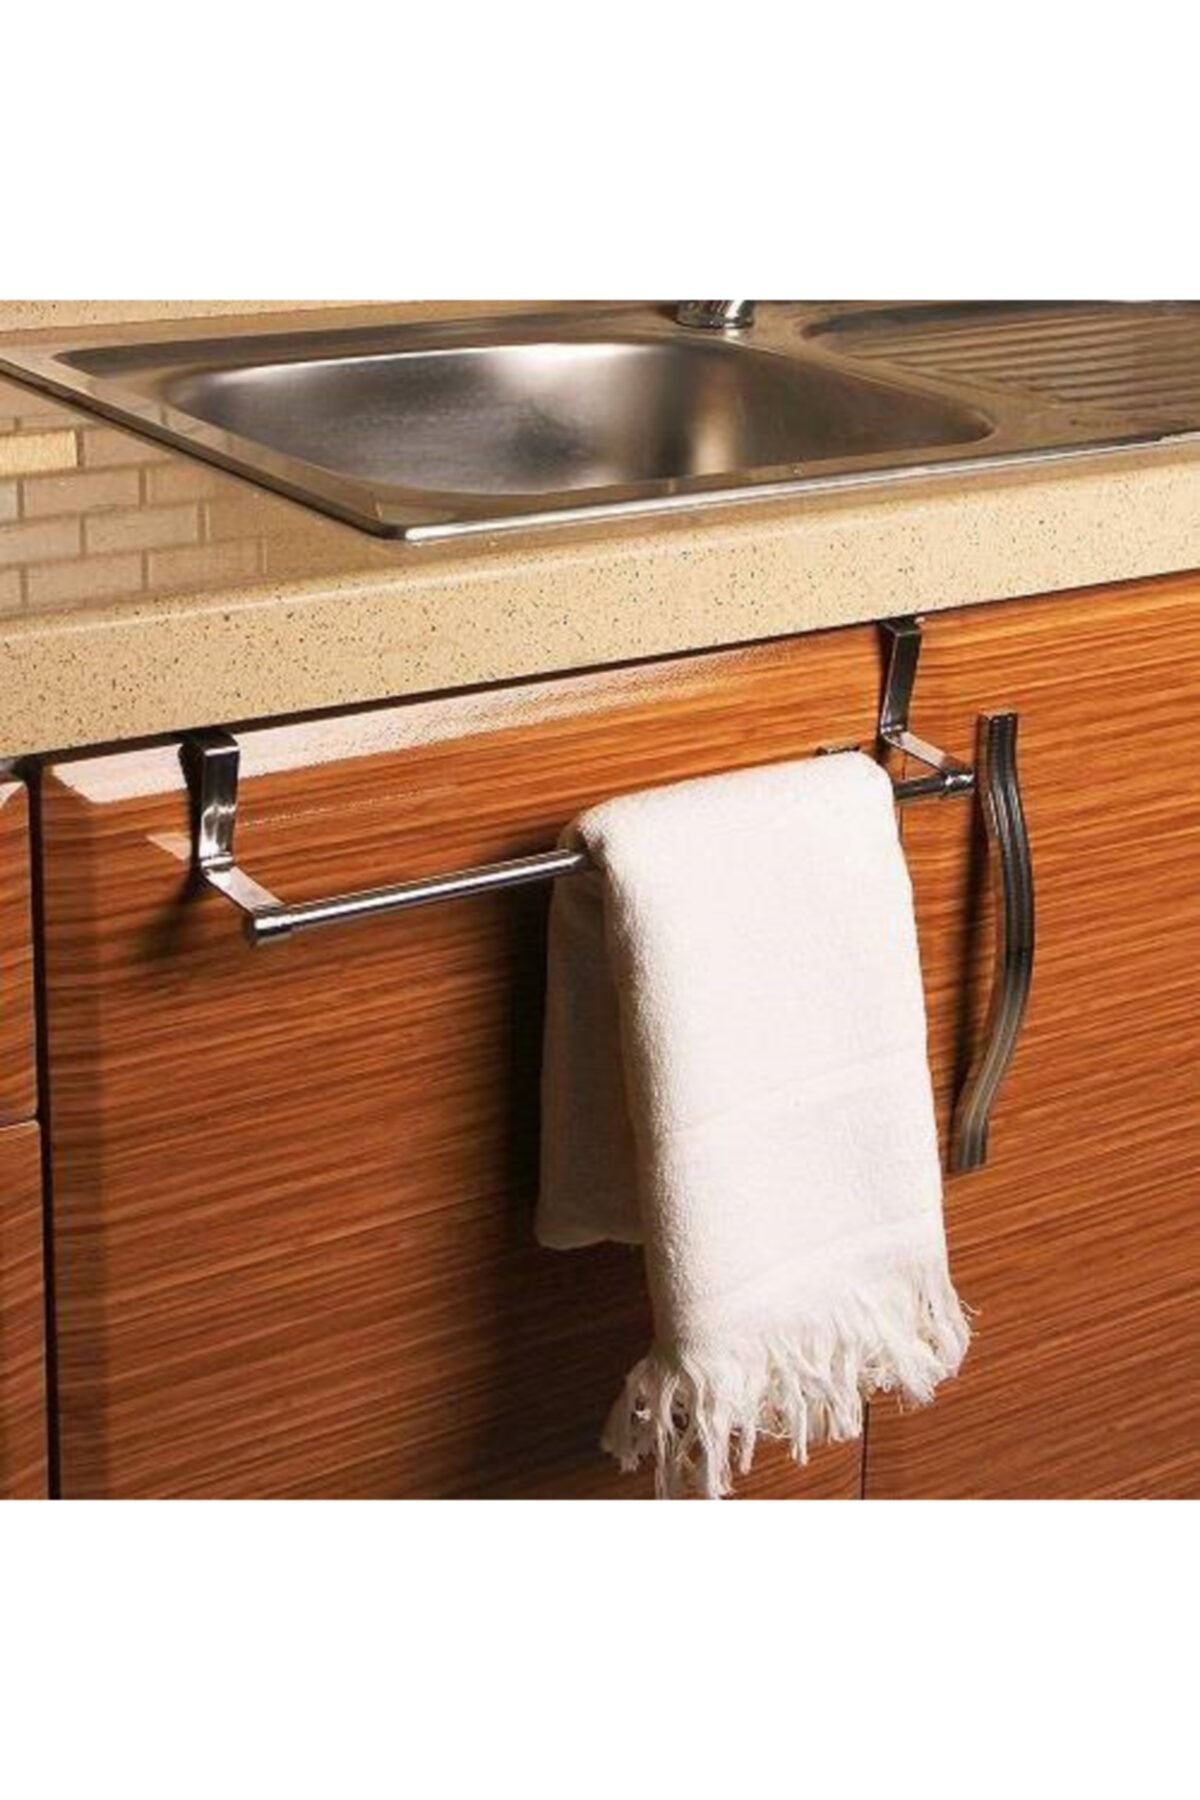 Biomak Askılık Metal Mutfak Banyo Dolap Kapağına Takılan Krom Kaplı Paslanmaz Kırılmaz Havlu Askılığı